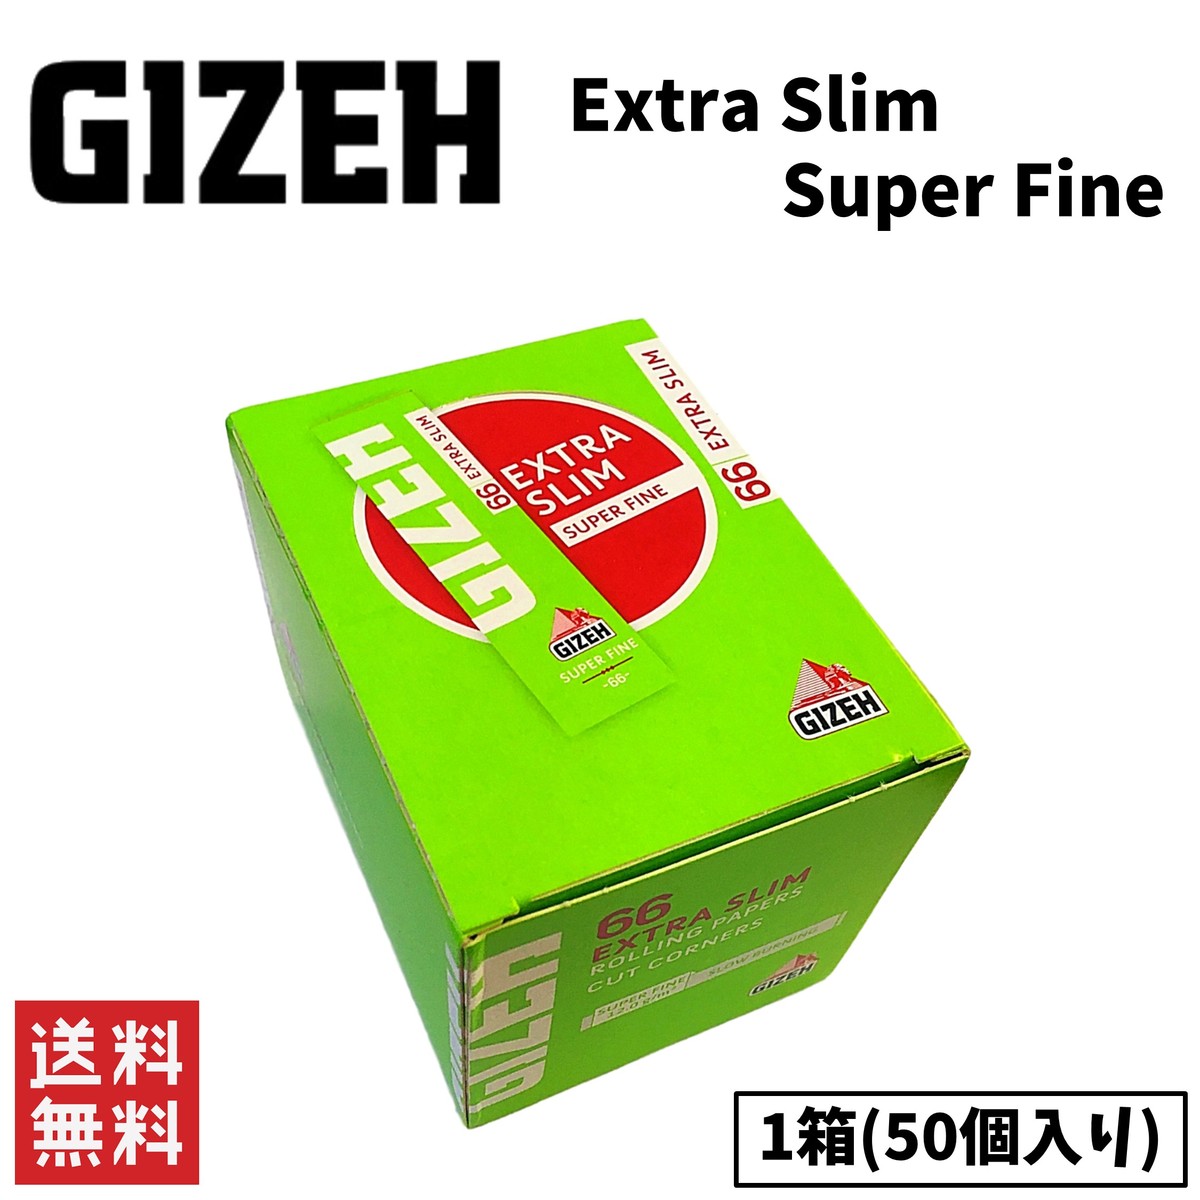 世界的に有名な手巻きタバコブランド GIZEH Extra Slim 新発売 Super Fine エクストラ 手巻きたばこ ペーパー 50個入り 喫煙具 特価キャンペーン スーパーファイン スリム 1箱